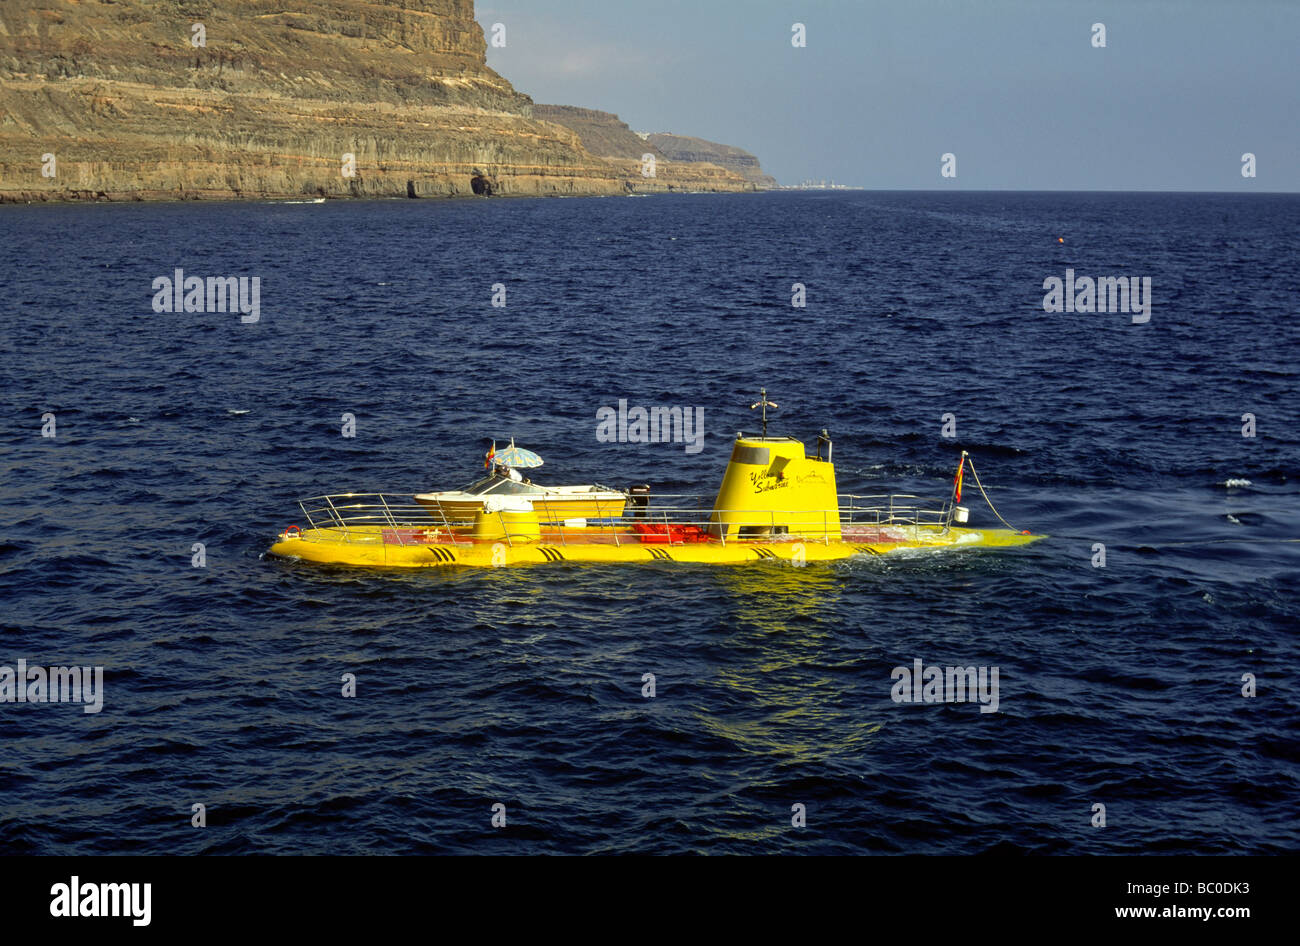 Sous-marin jaune attraction touristique de Puerto de Mogan Gran Canaria Espagne Europe Banque D'Images